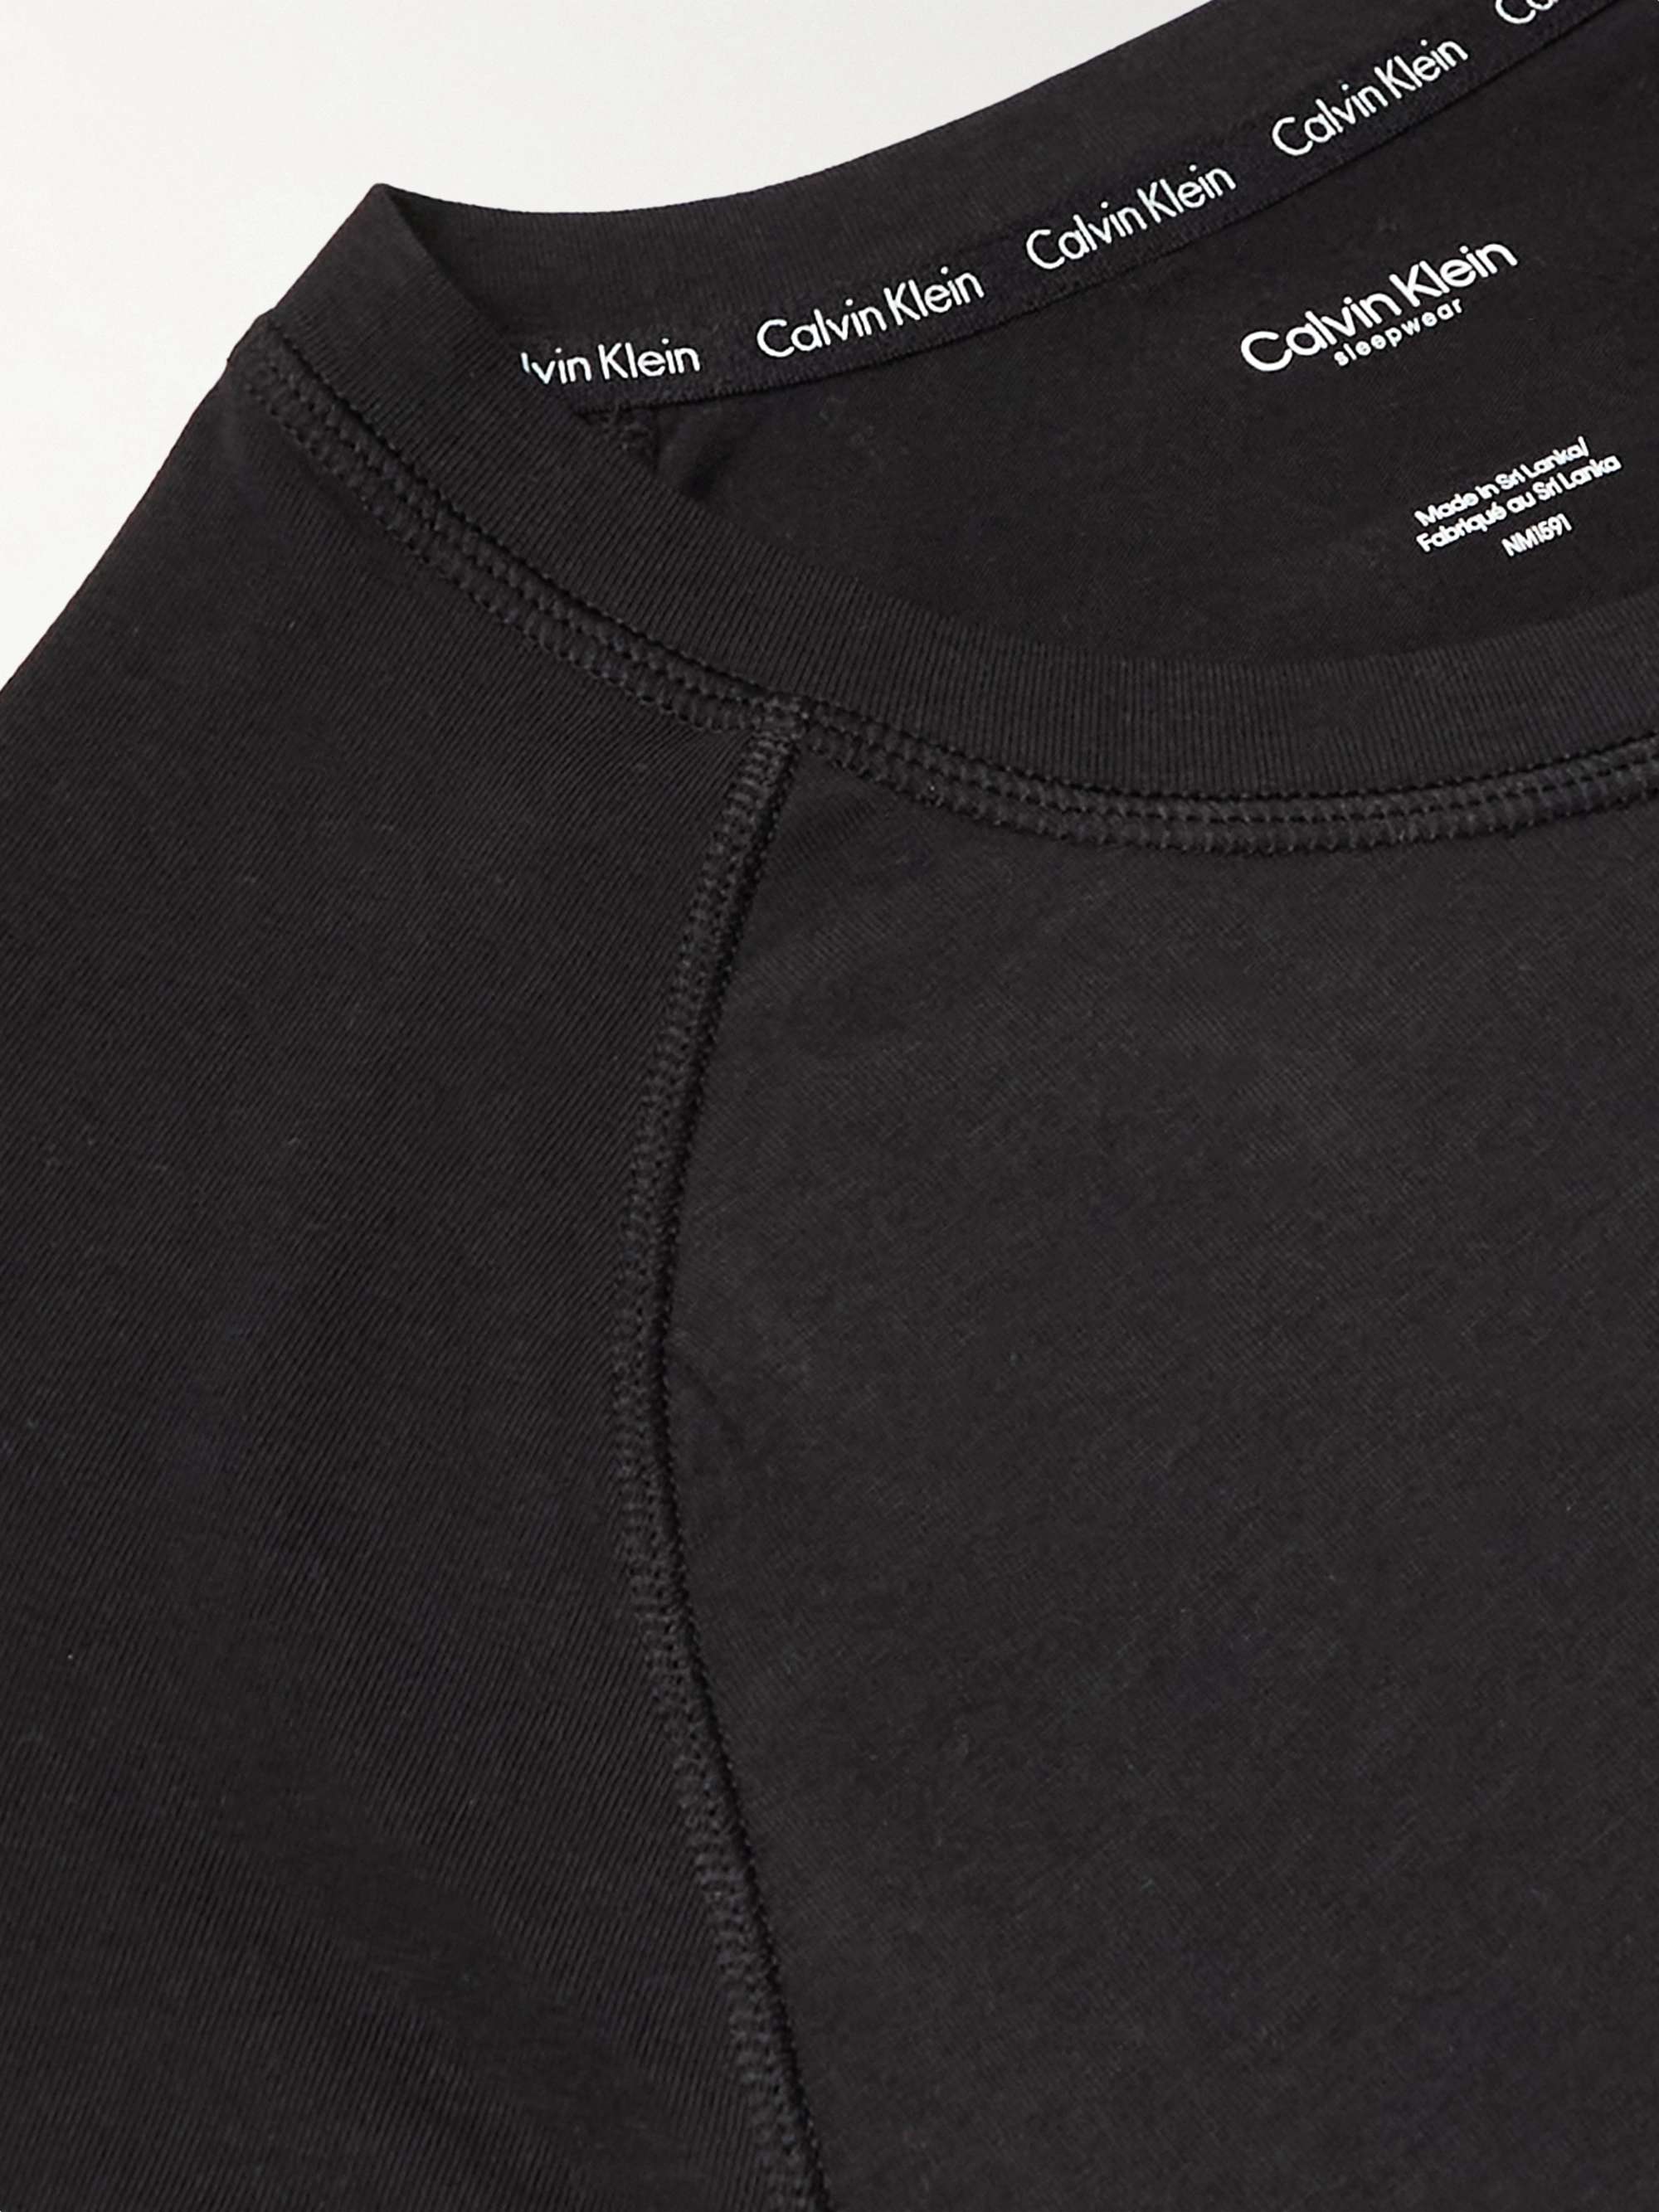 CALVIN KLEIN UNDERWEAR Logo-Print Cotton-Blend Jersey Pyjama Set | MR PORTER